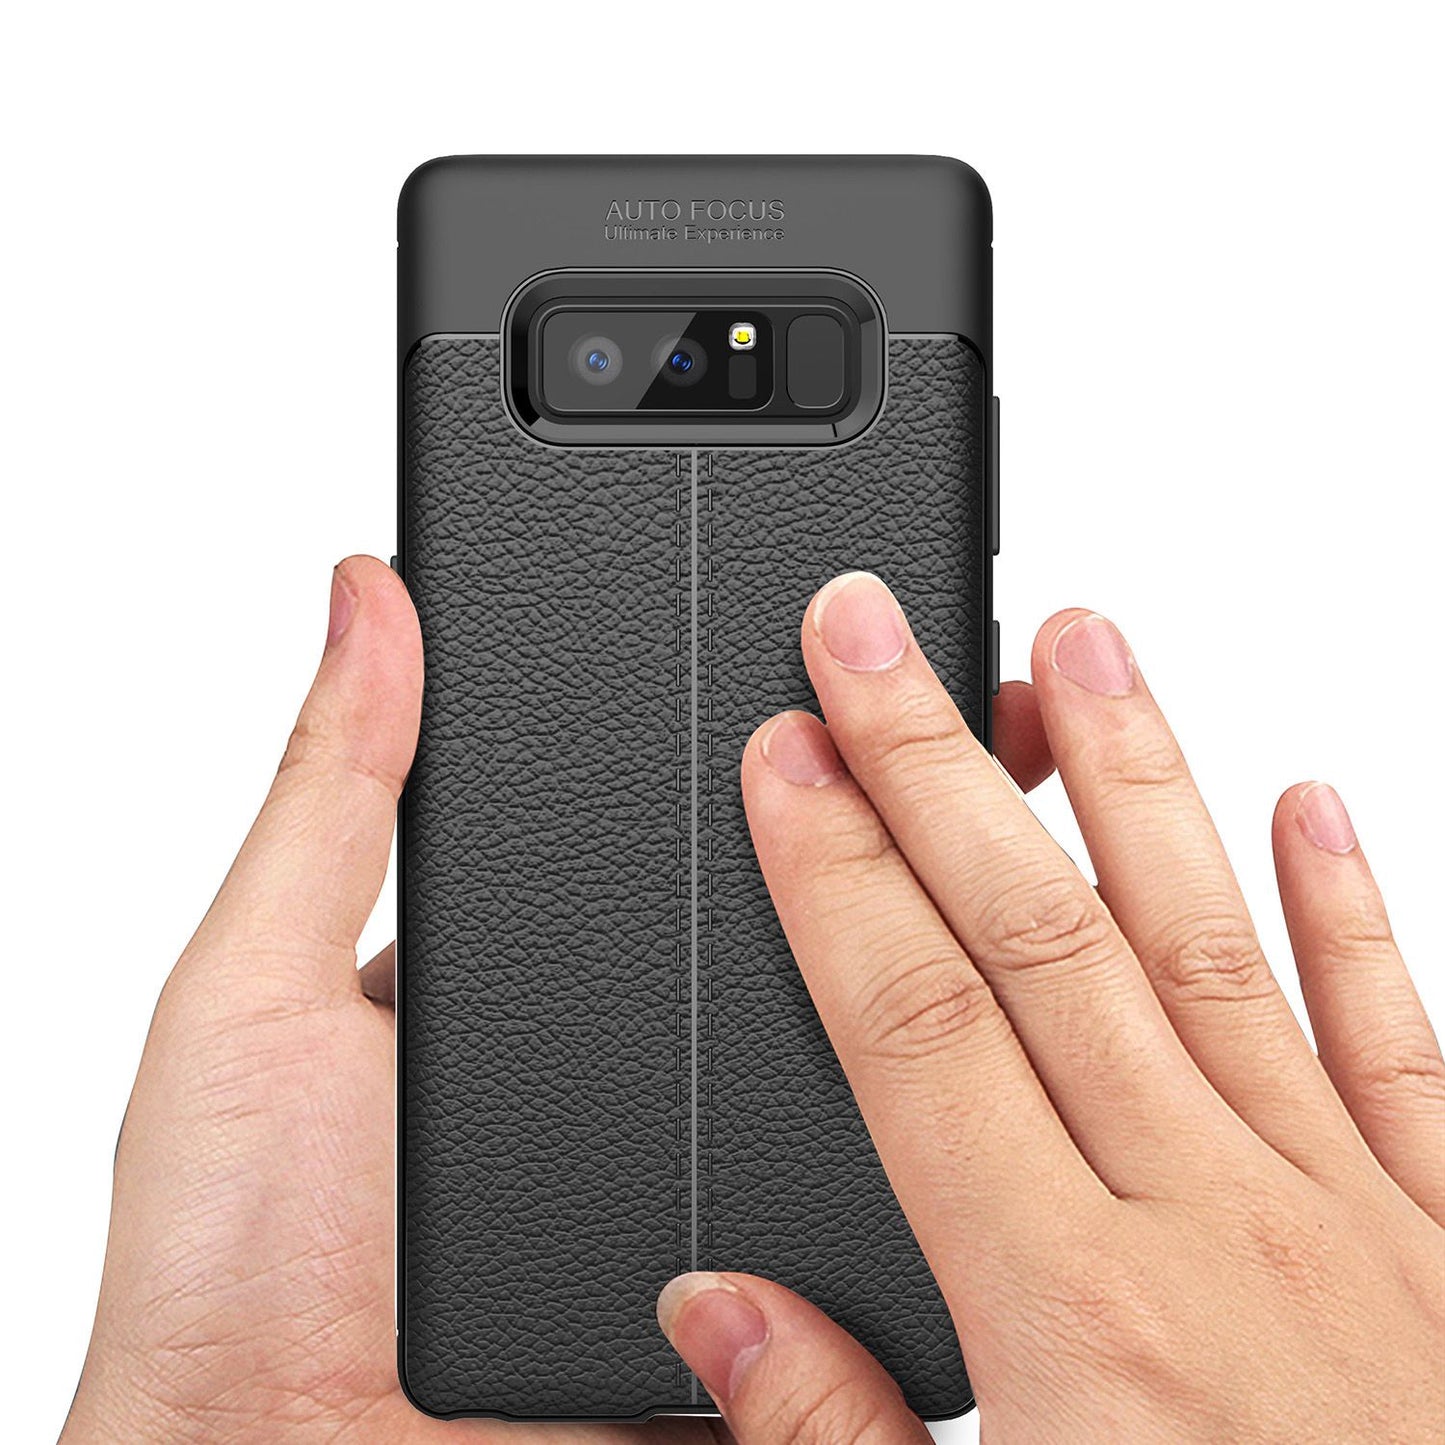 Samsung Galaxy Note 8 Leder Look Handy Hülle von NALIA, Silikon Cover Case Schutz